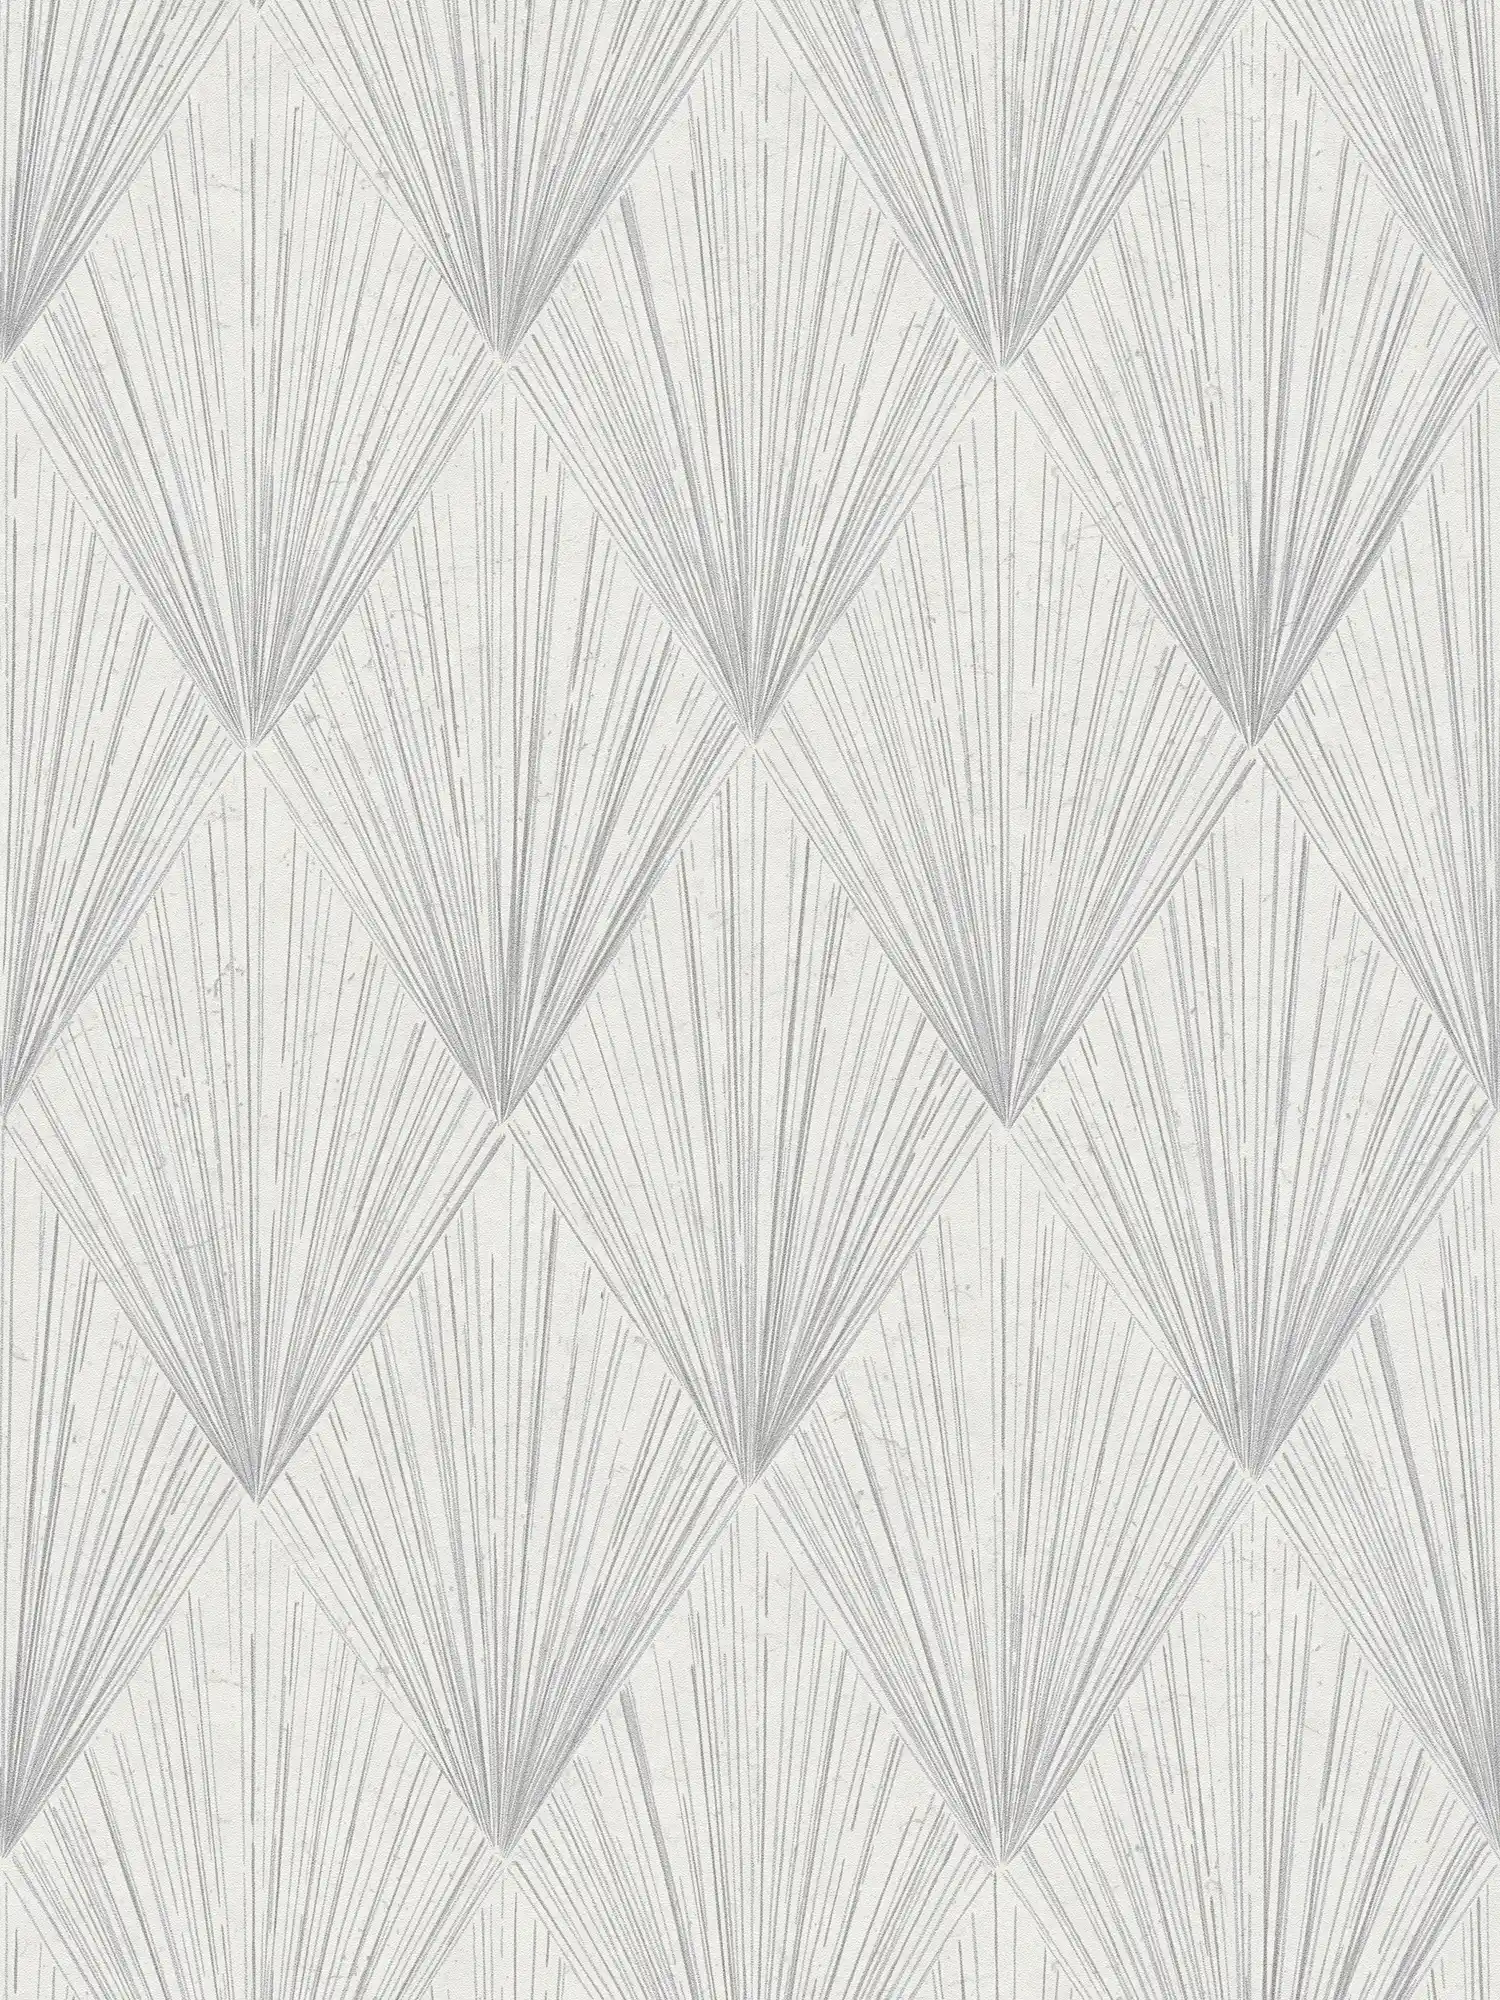 Pattern wallpaper modern art deco style - grey, metallic, white
